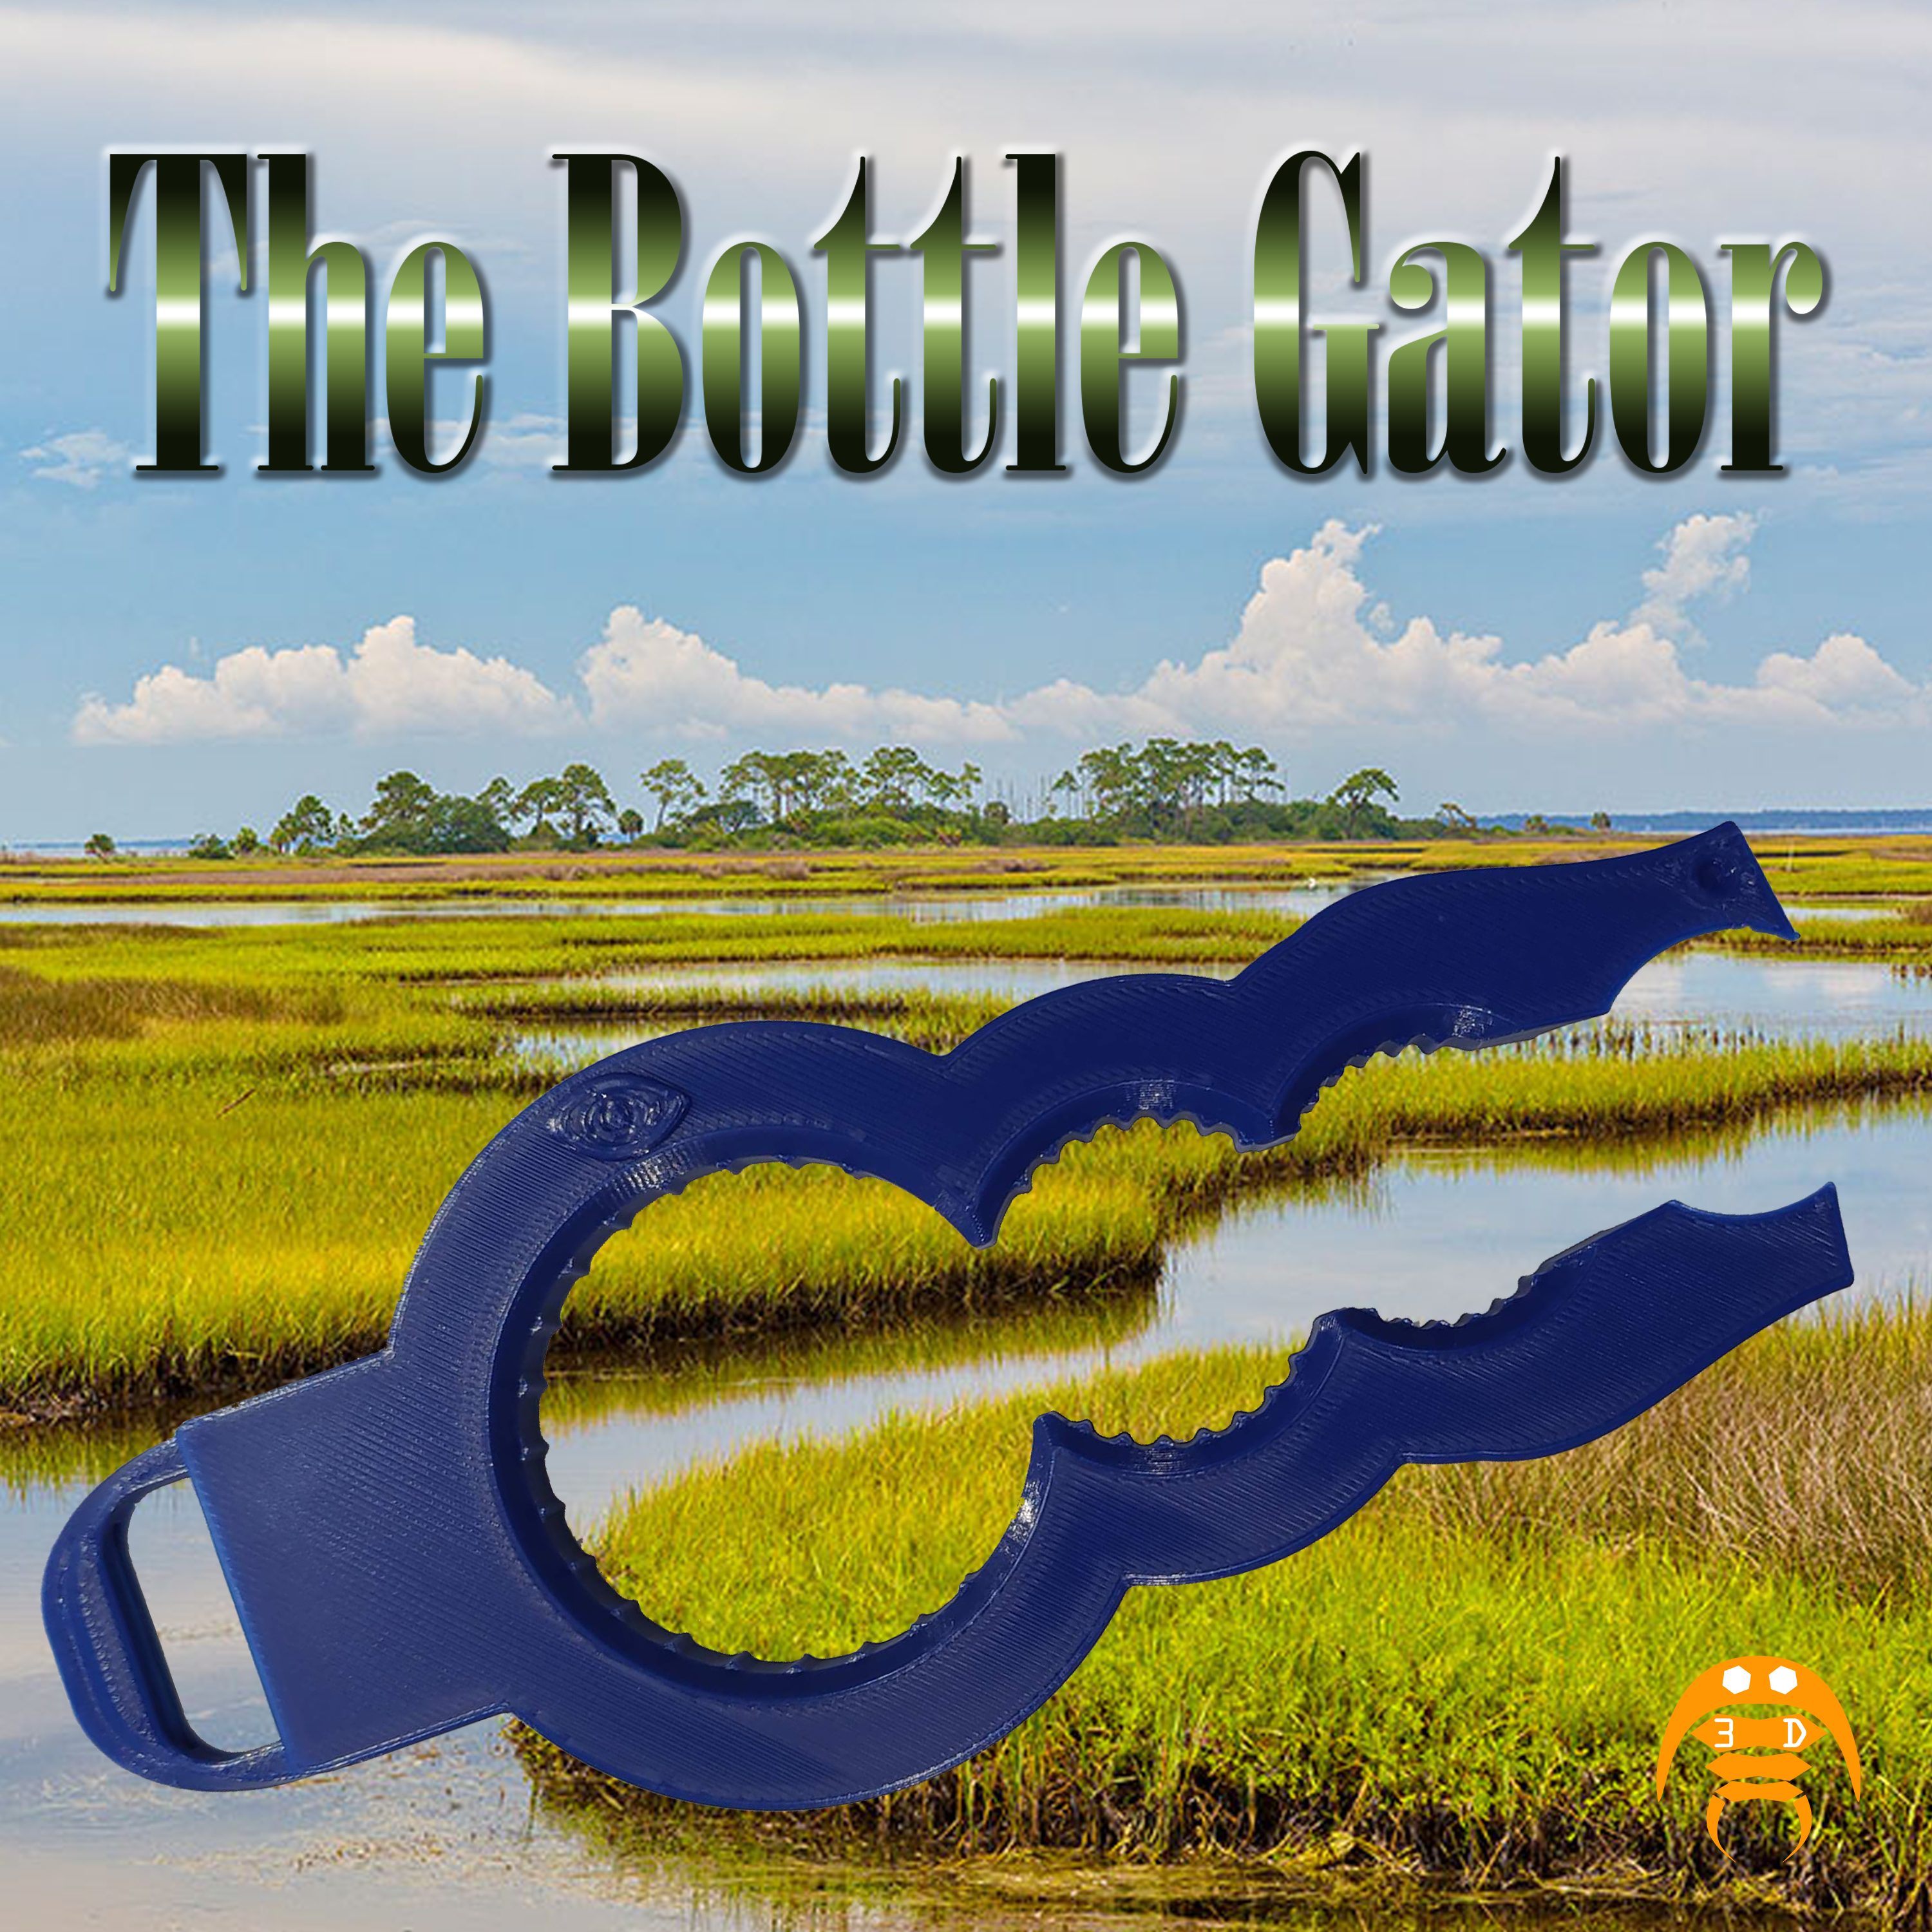 The Bottle Gator